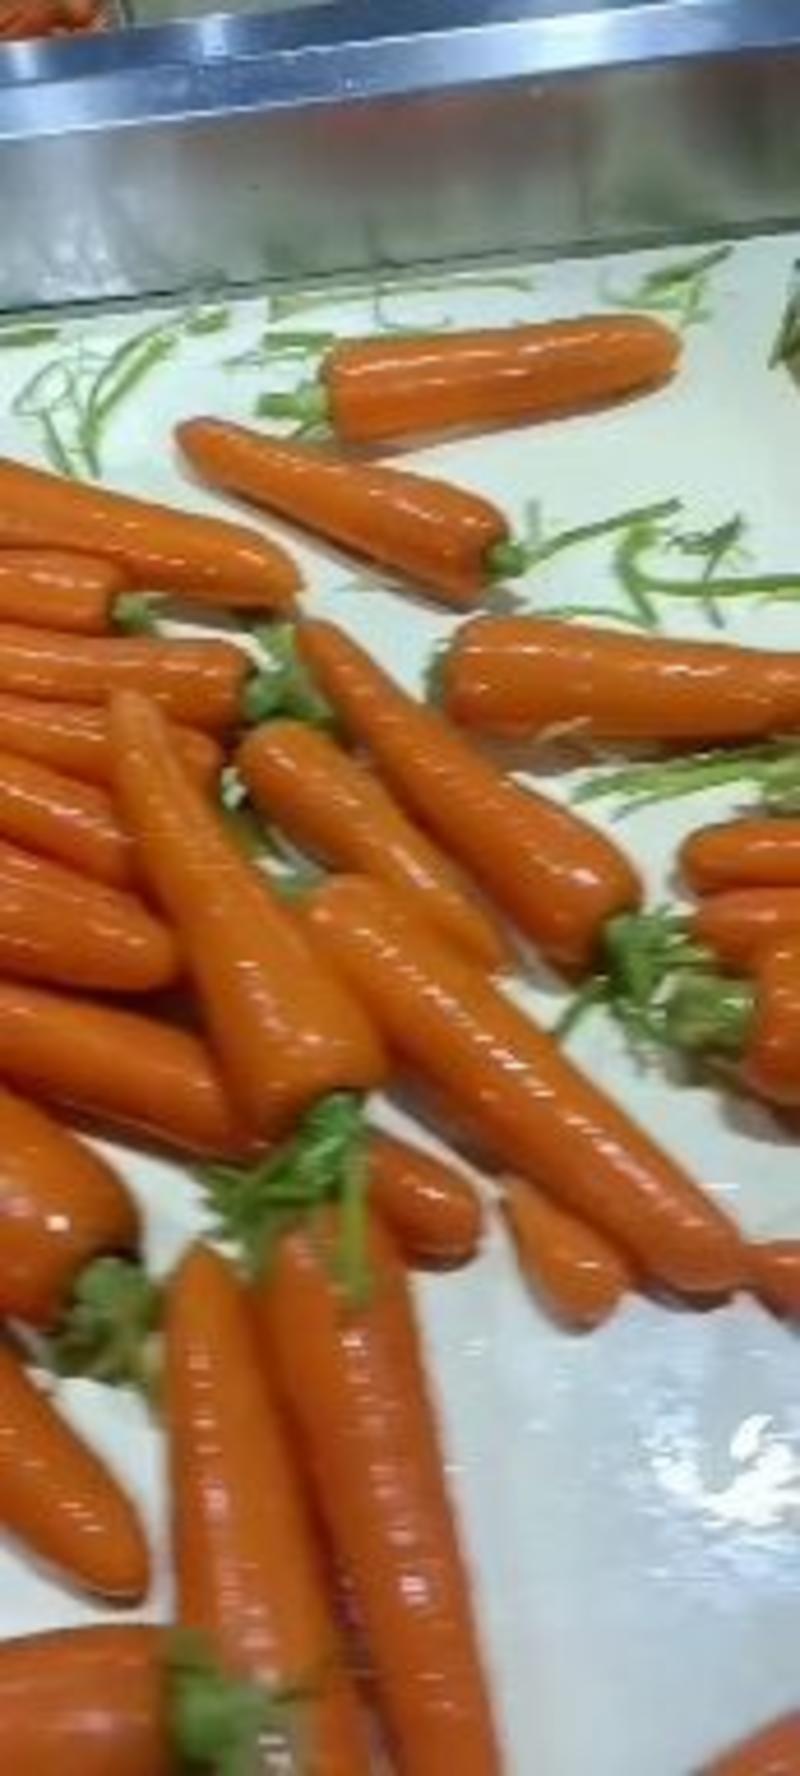 【大红胡萝卜】红萝卜陕西直发光滑度高皮红营养高现挖先发电联